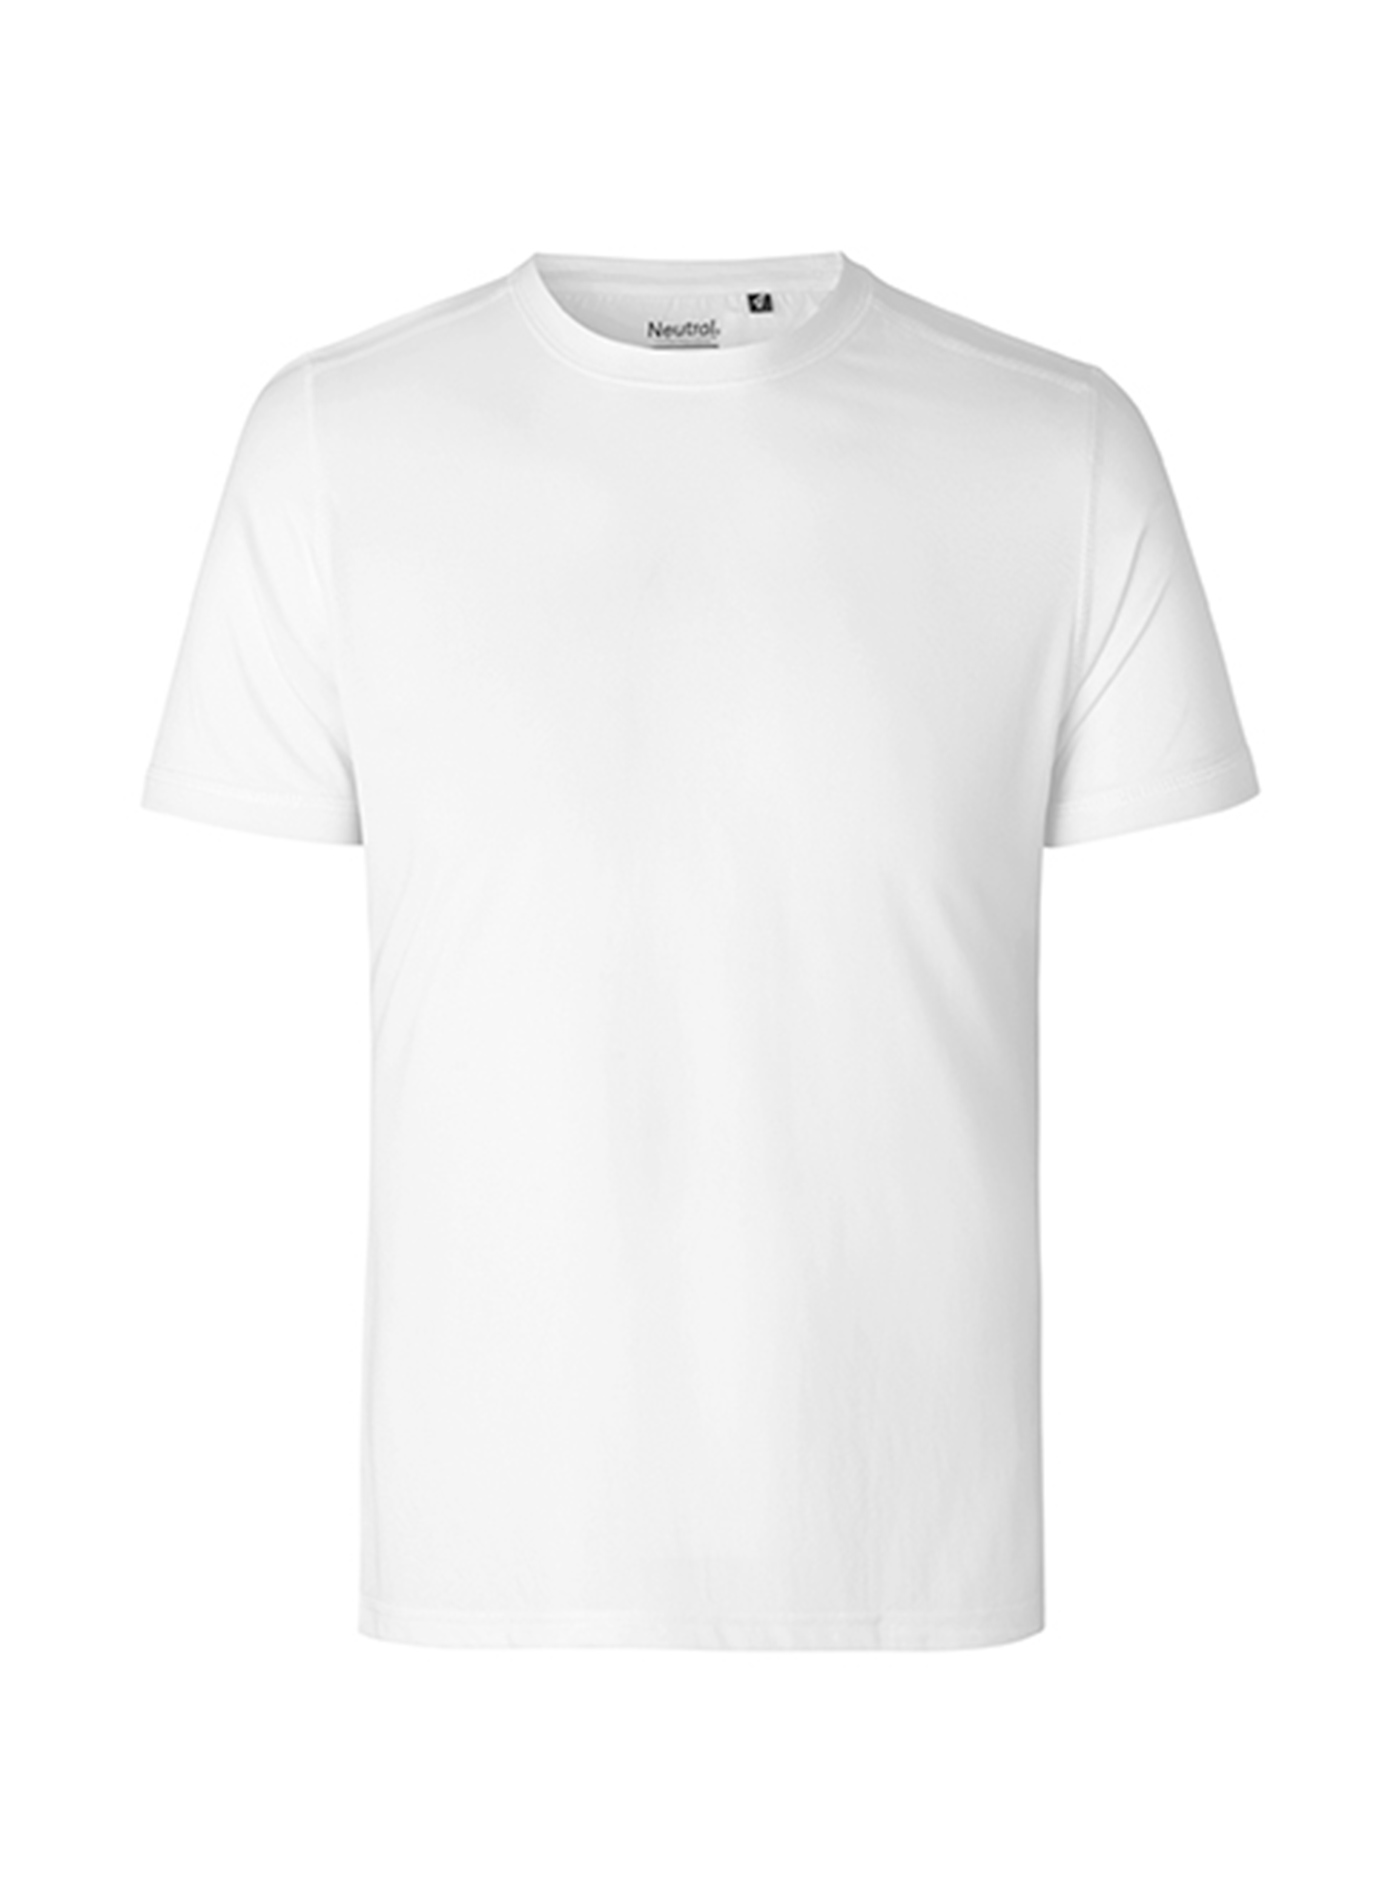 Pánské tričko Performance Neutral - Bílá S